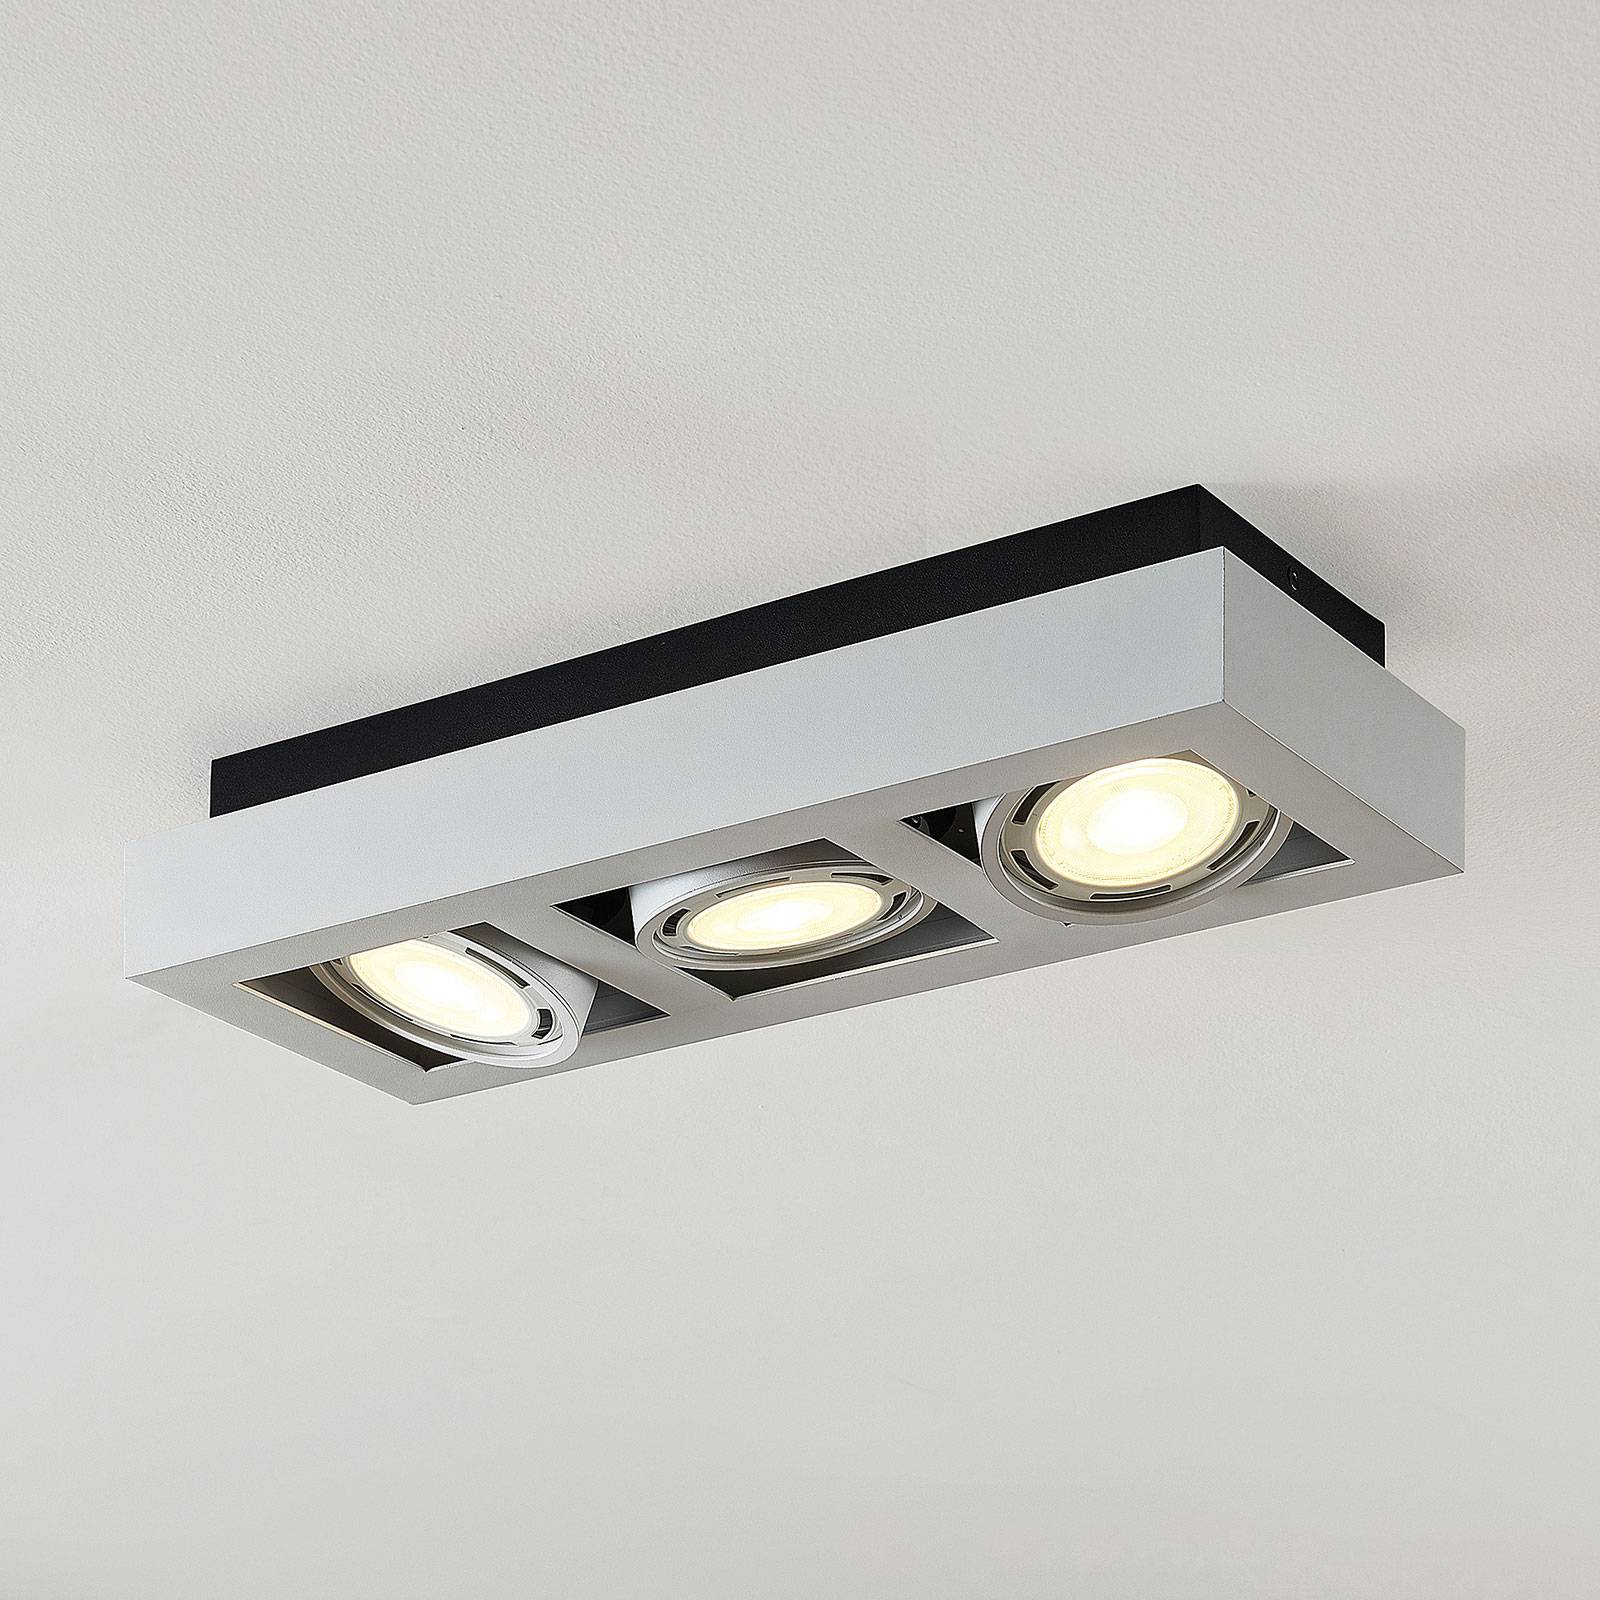 LED-kattospotti Ronka, GU10, 3-lamppuinen, valk.